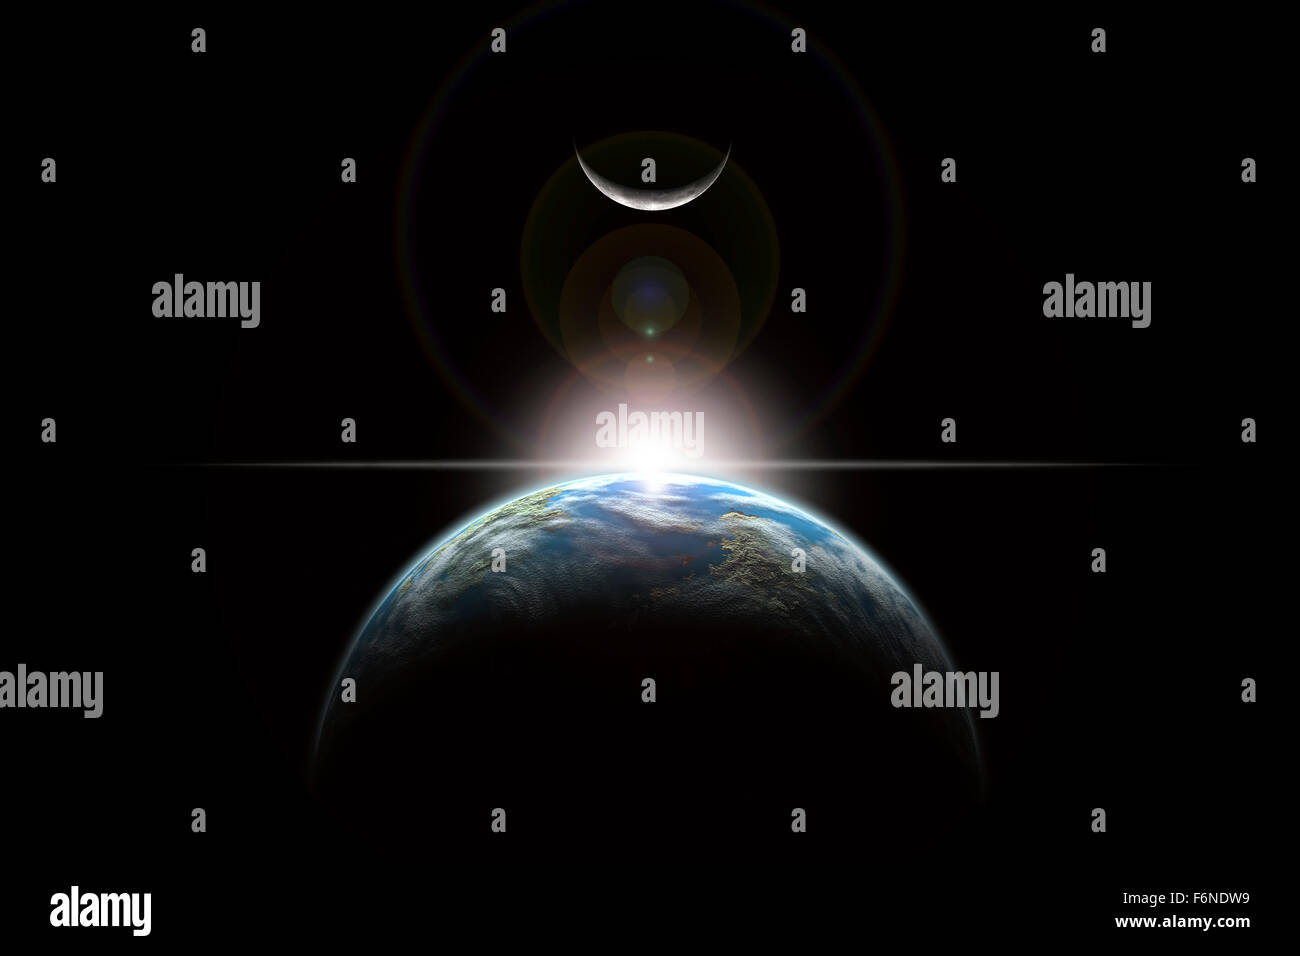 Representación de un artista de una estrella que se alza sobre un planeta similar a la tierra e iluminando es lone luna. Foto de stock